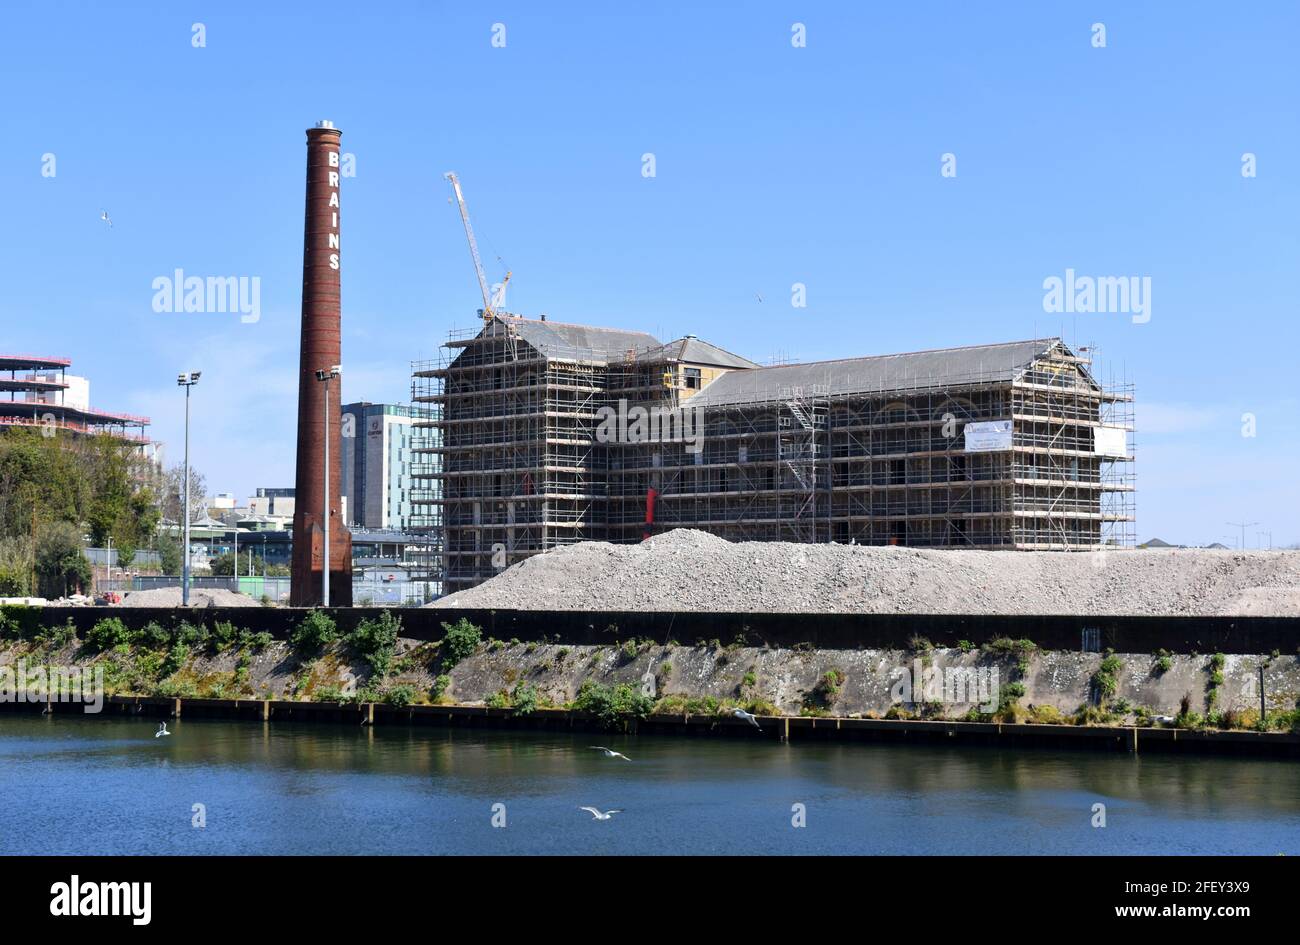 Reurbanización de la fábrica de cerveza Brains en construcción, esquema Central Quay, Cardiff, Gales Foto de stock